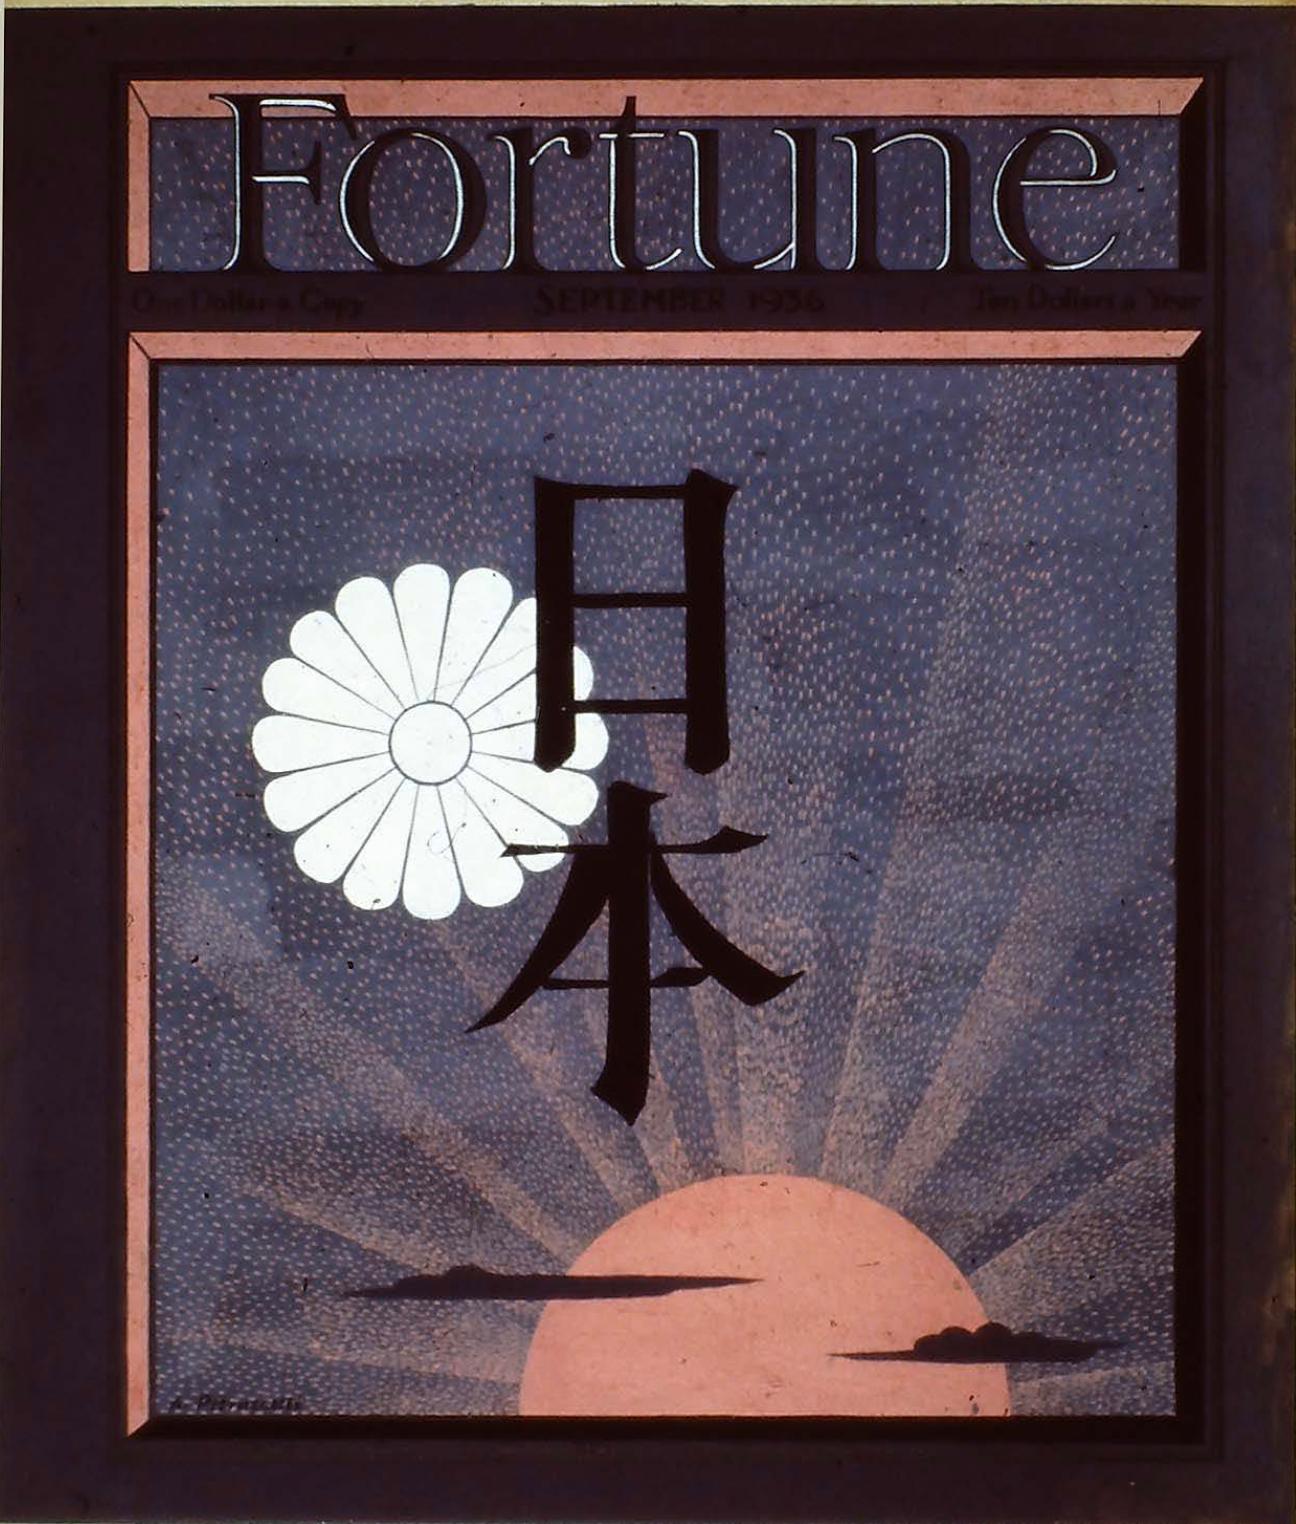 Still-Life Antonio Petruccelli - Édition japonaise du magazine Fortune, couverture du magazine, illustration japonaise du milieu du siècle dernier